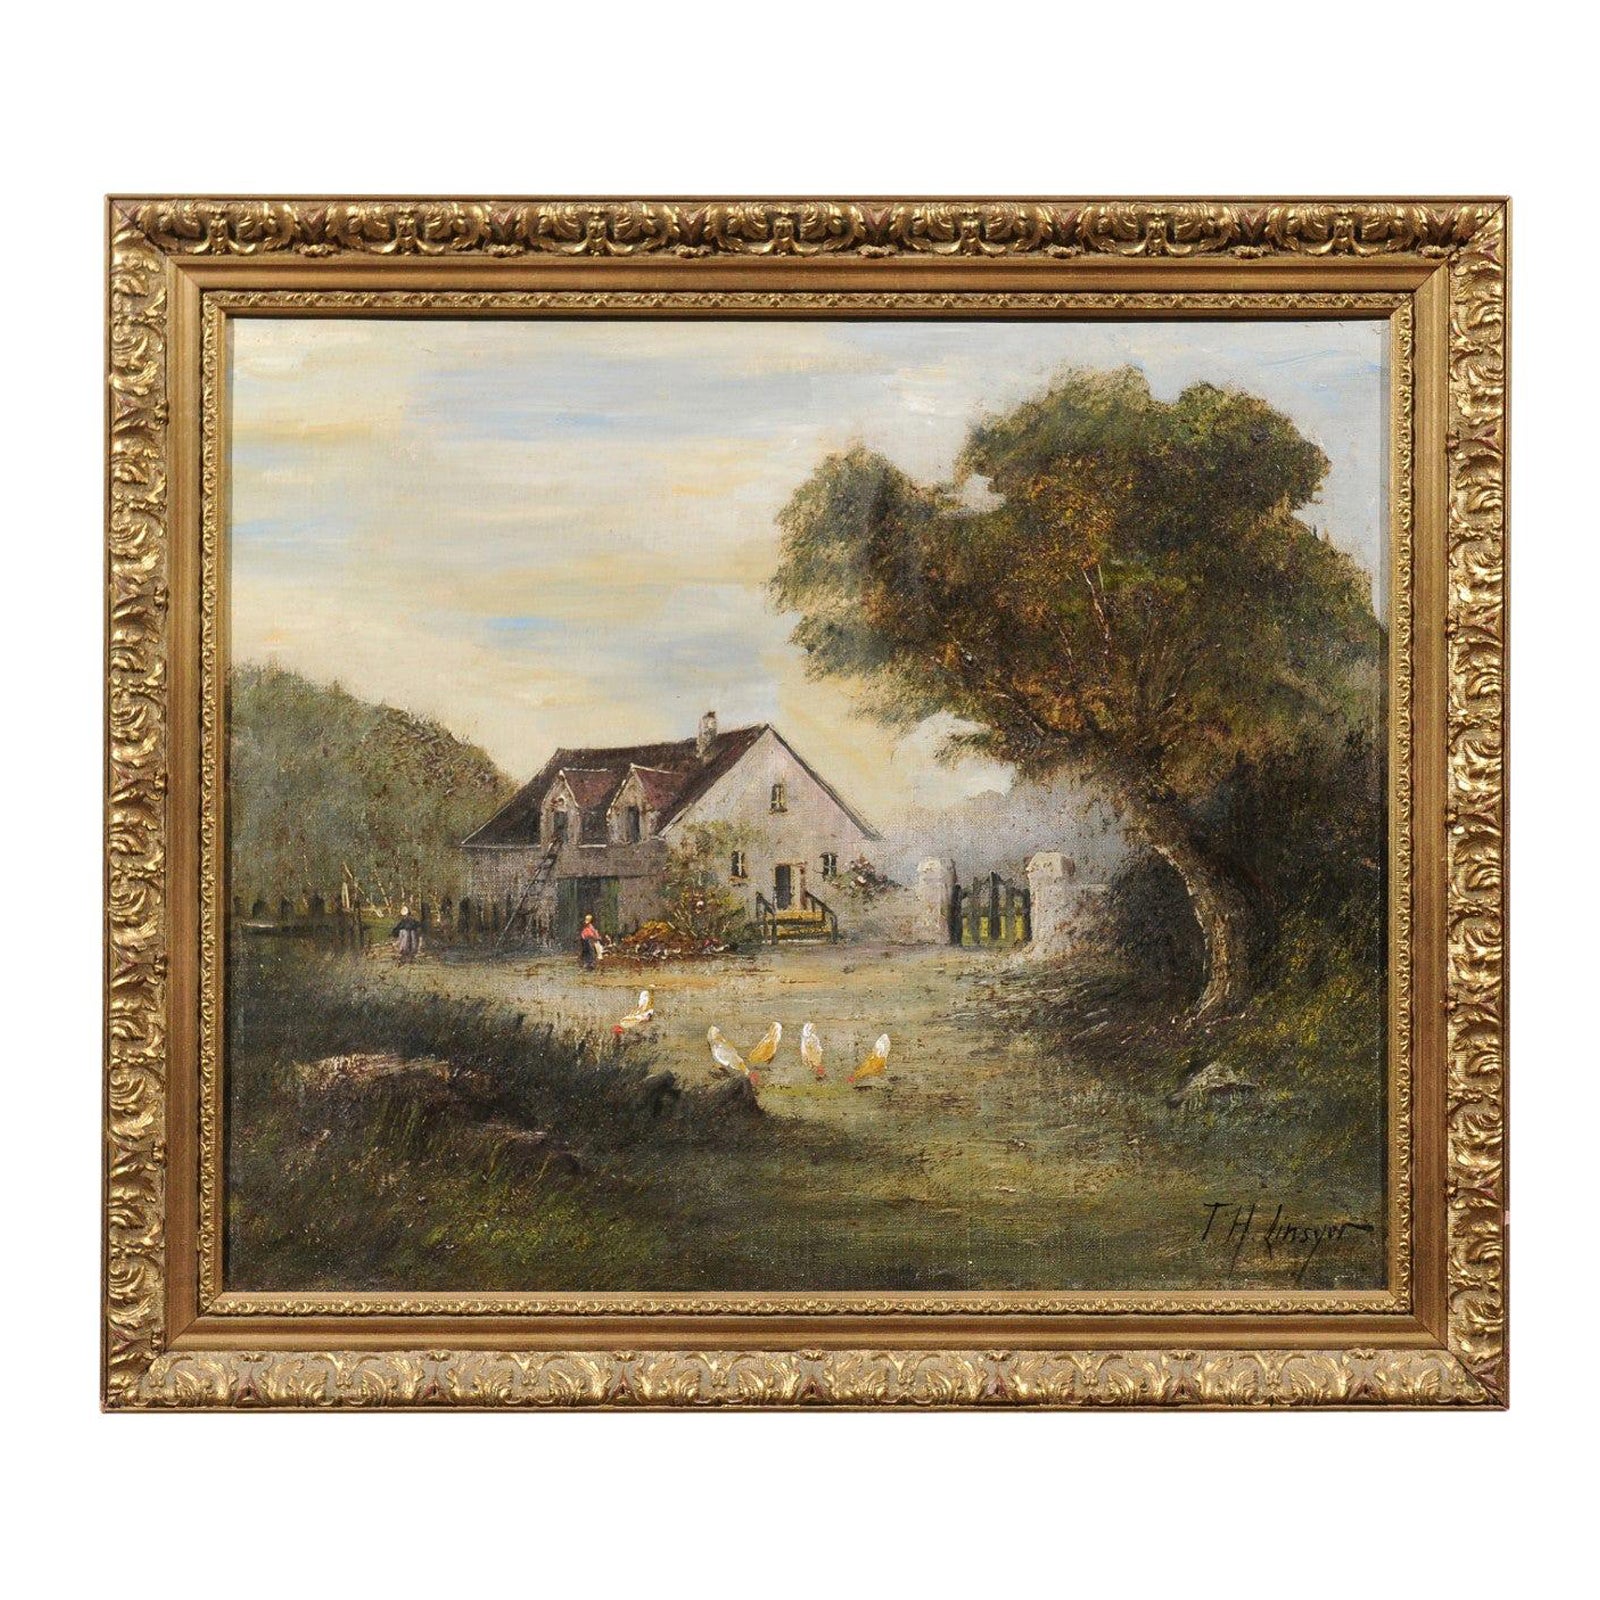 Huile sur toile encadrée de l'école française de Barbizon, peinture pastorale, signée Th. Linsyer